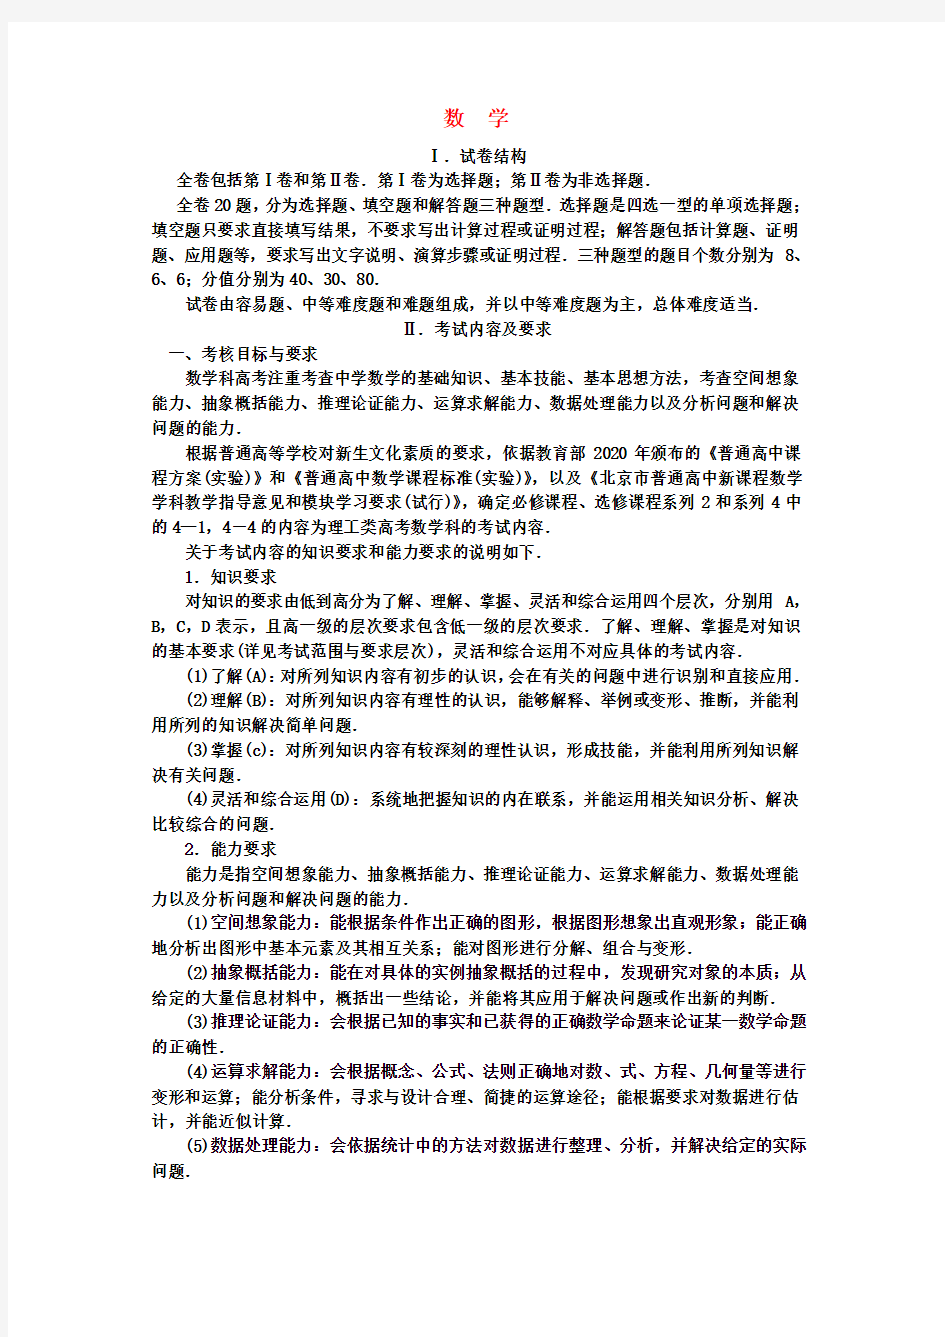 2020北京高三数学高考考试大纲说明素材